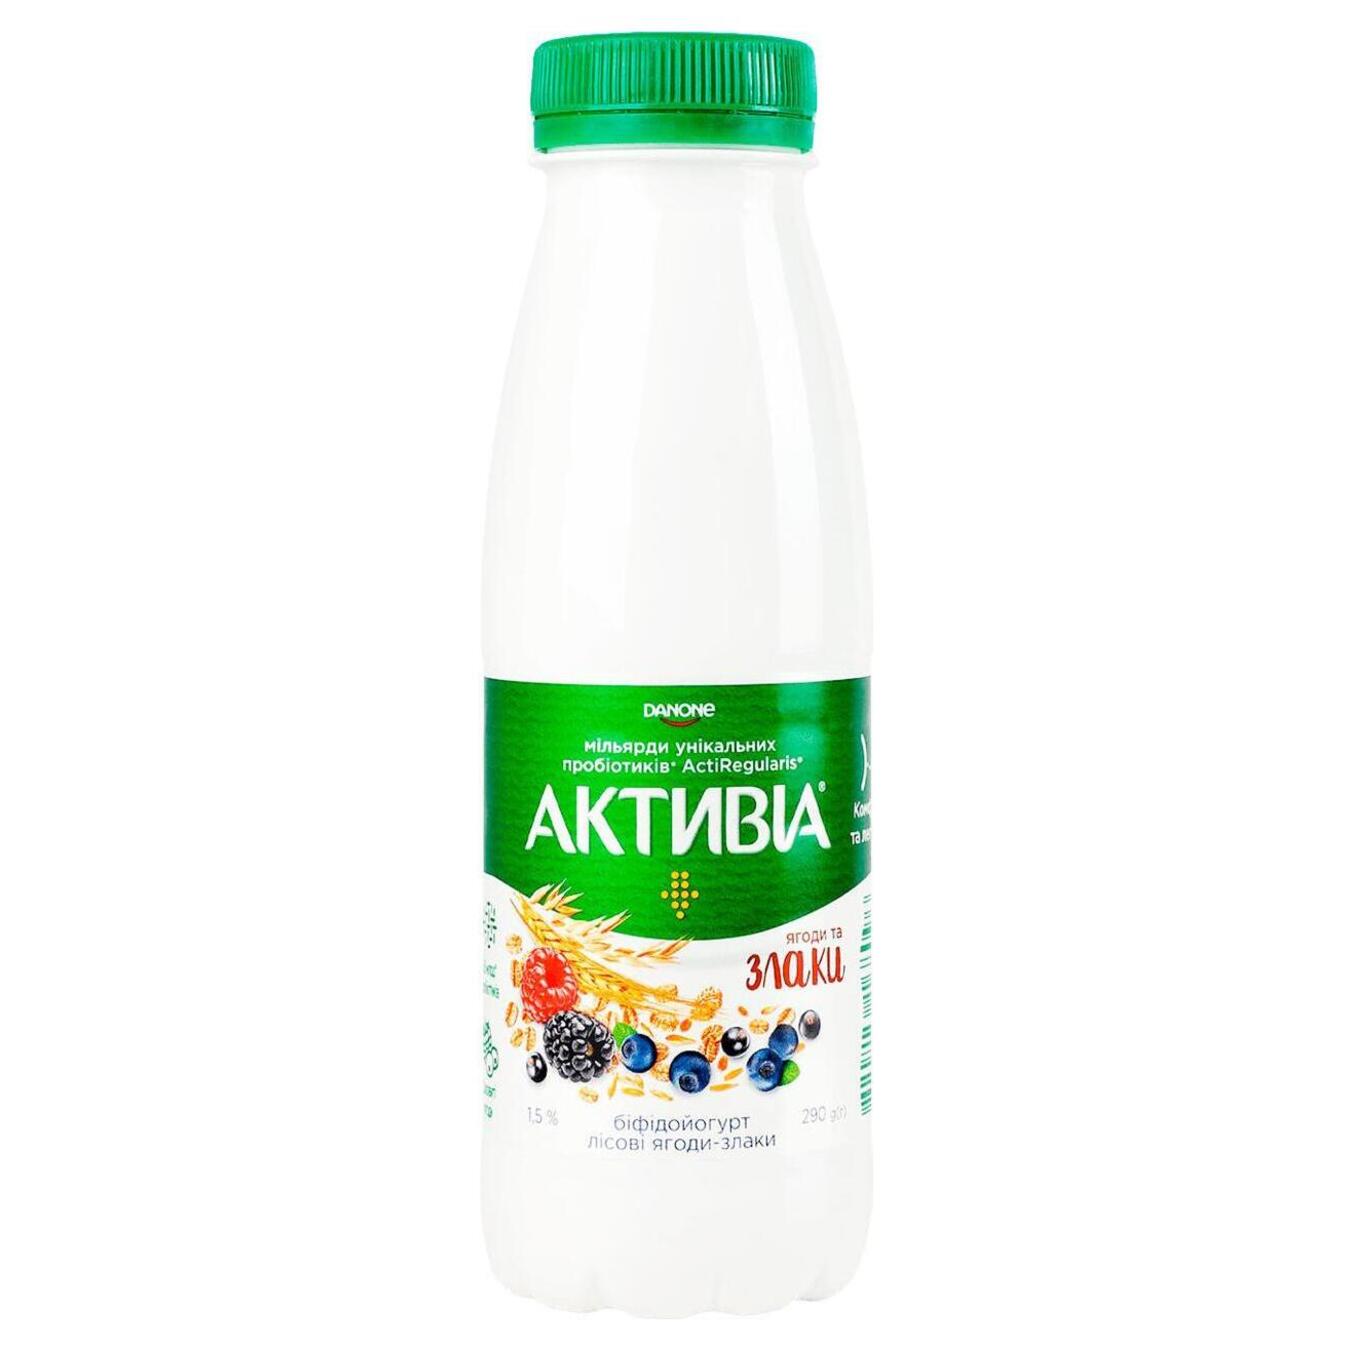 Bifidoyogurt drinkable Activia forest berries-cereals 1.5% 290g